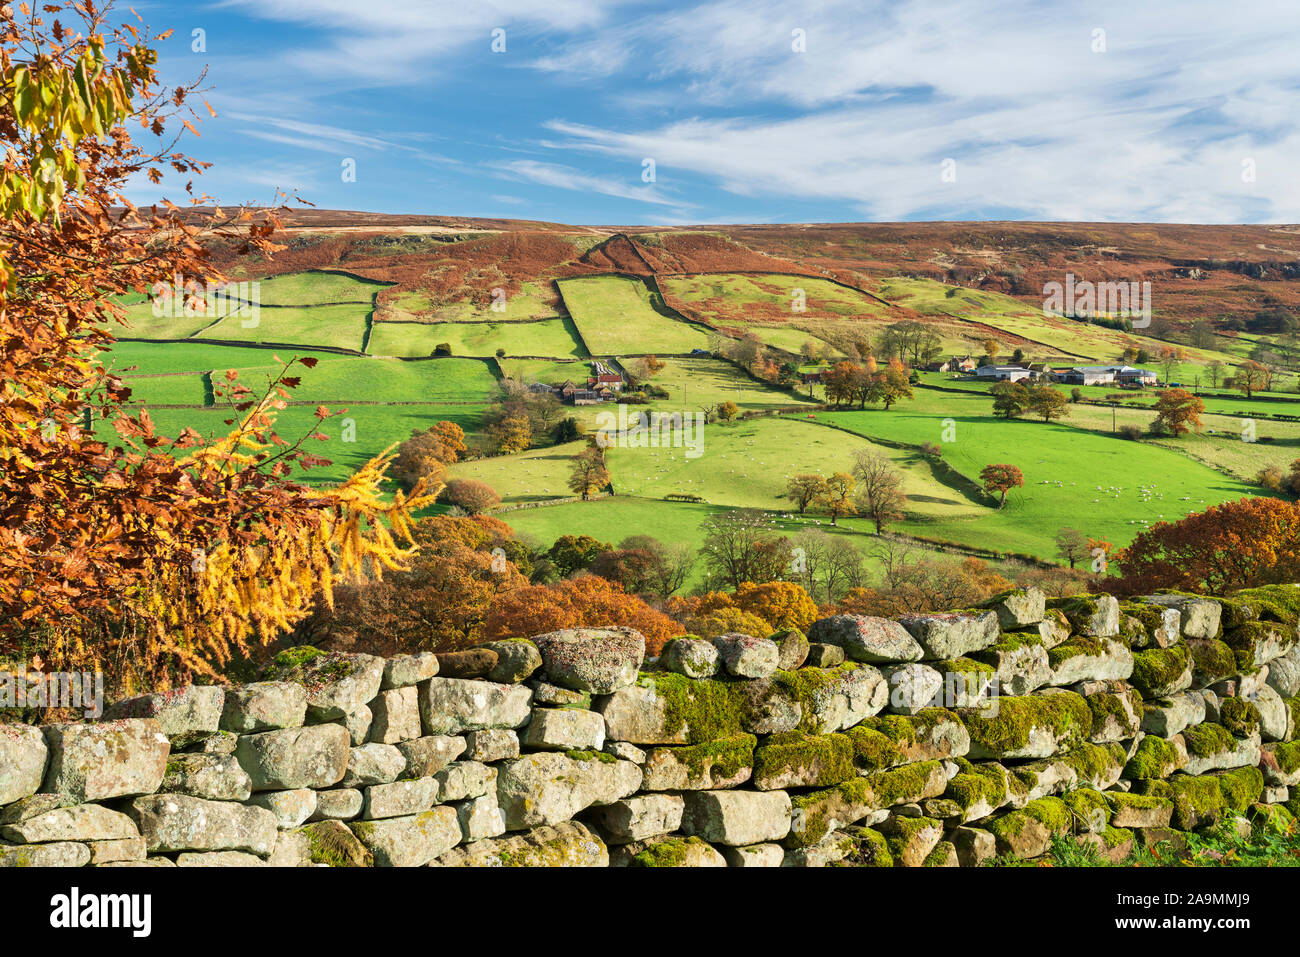 Campi verdi, muri in pietra a secco e foglie di autunno in tutta Farndale in North Yorkshire, Regno Unito. Foto Stock